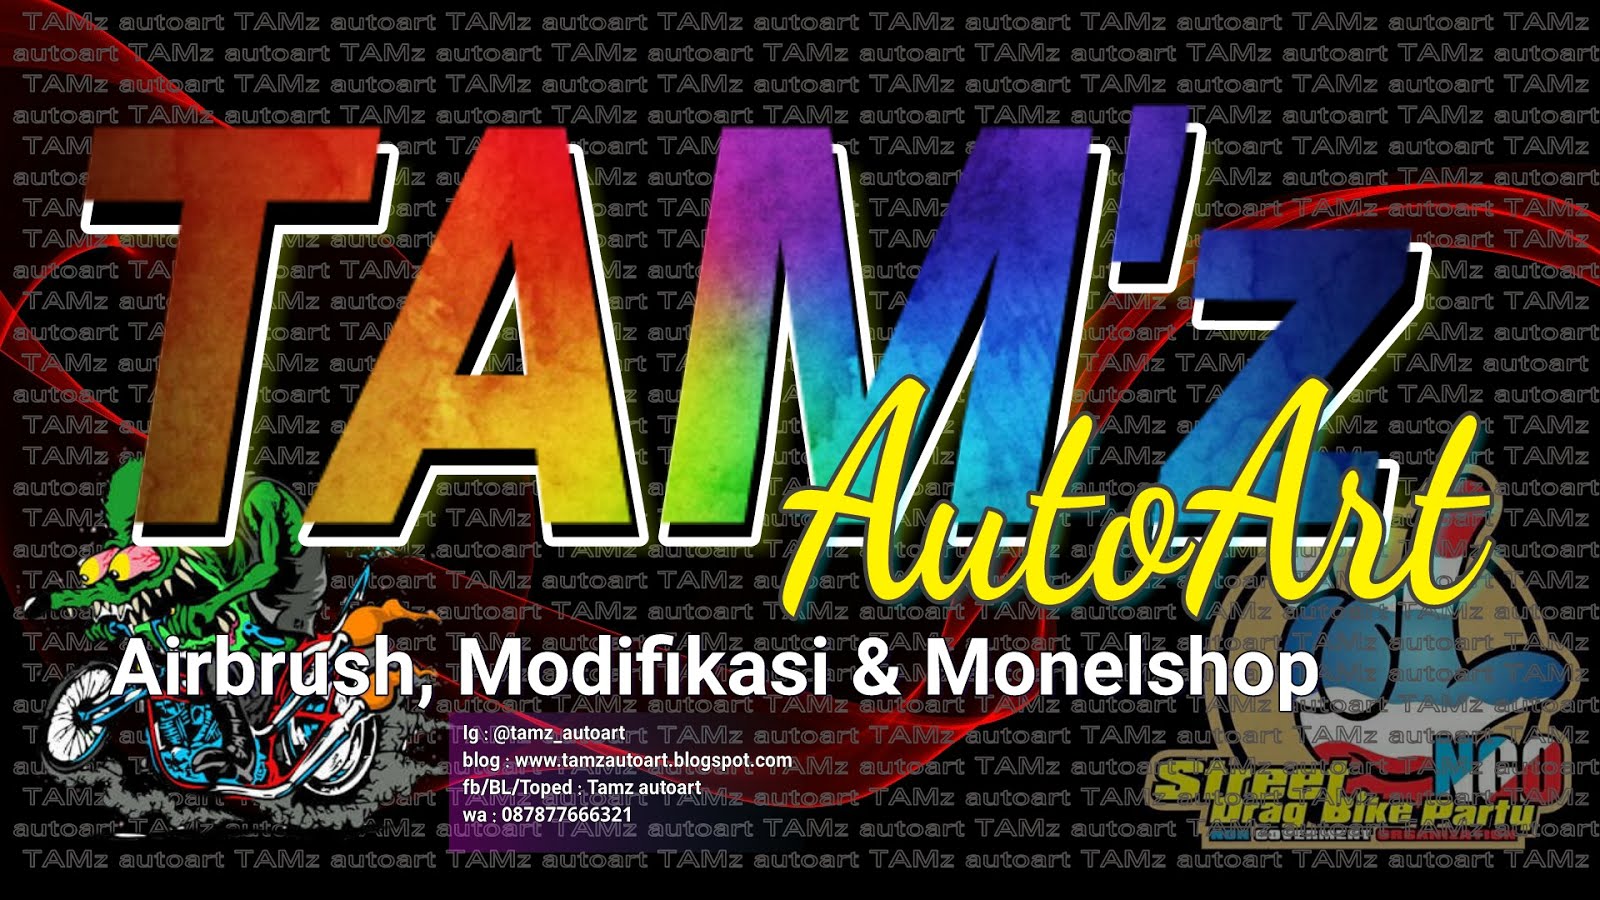 TAMz autoart (airbrush, custom n monelshop)